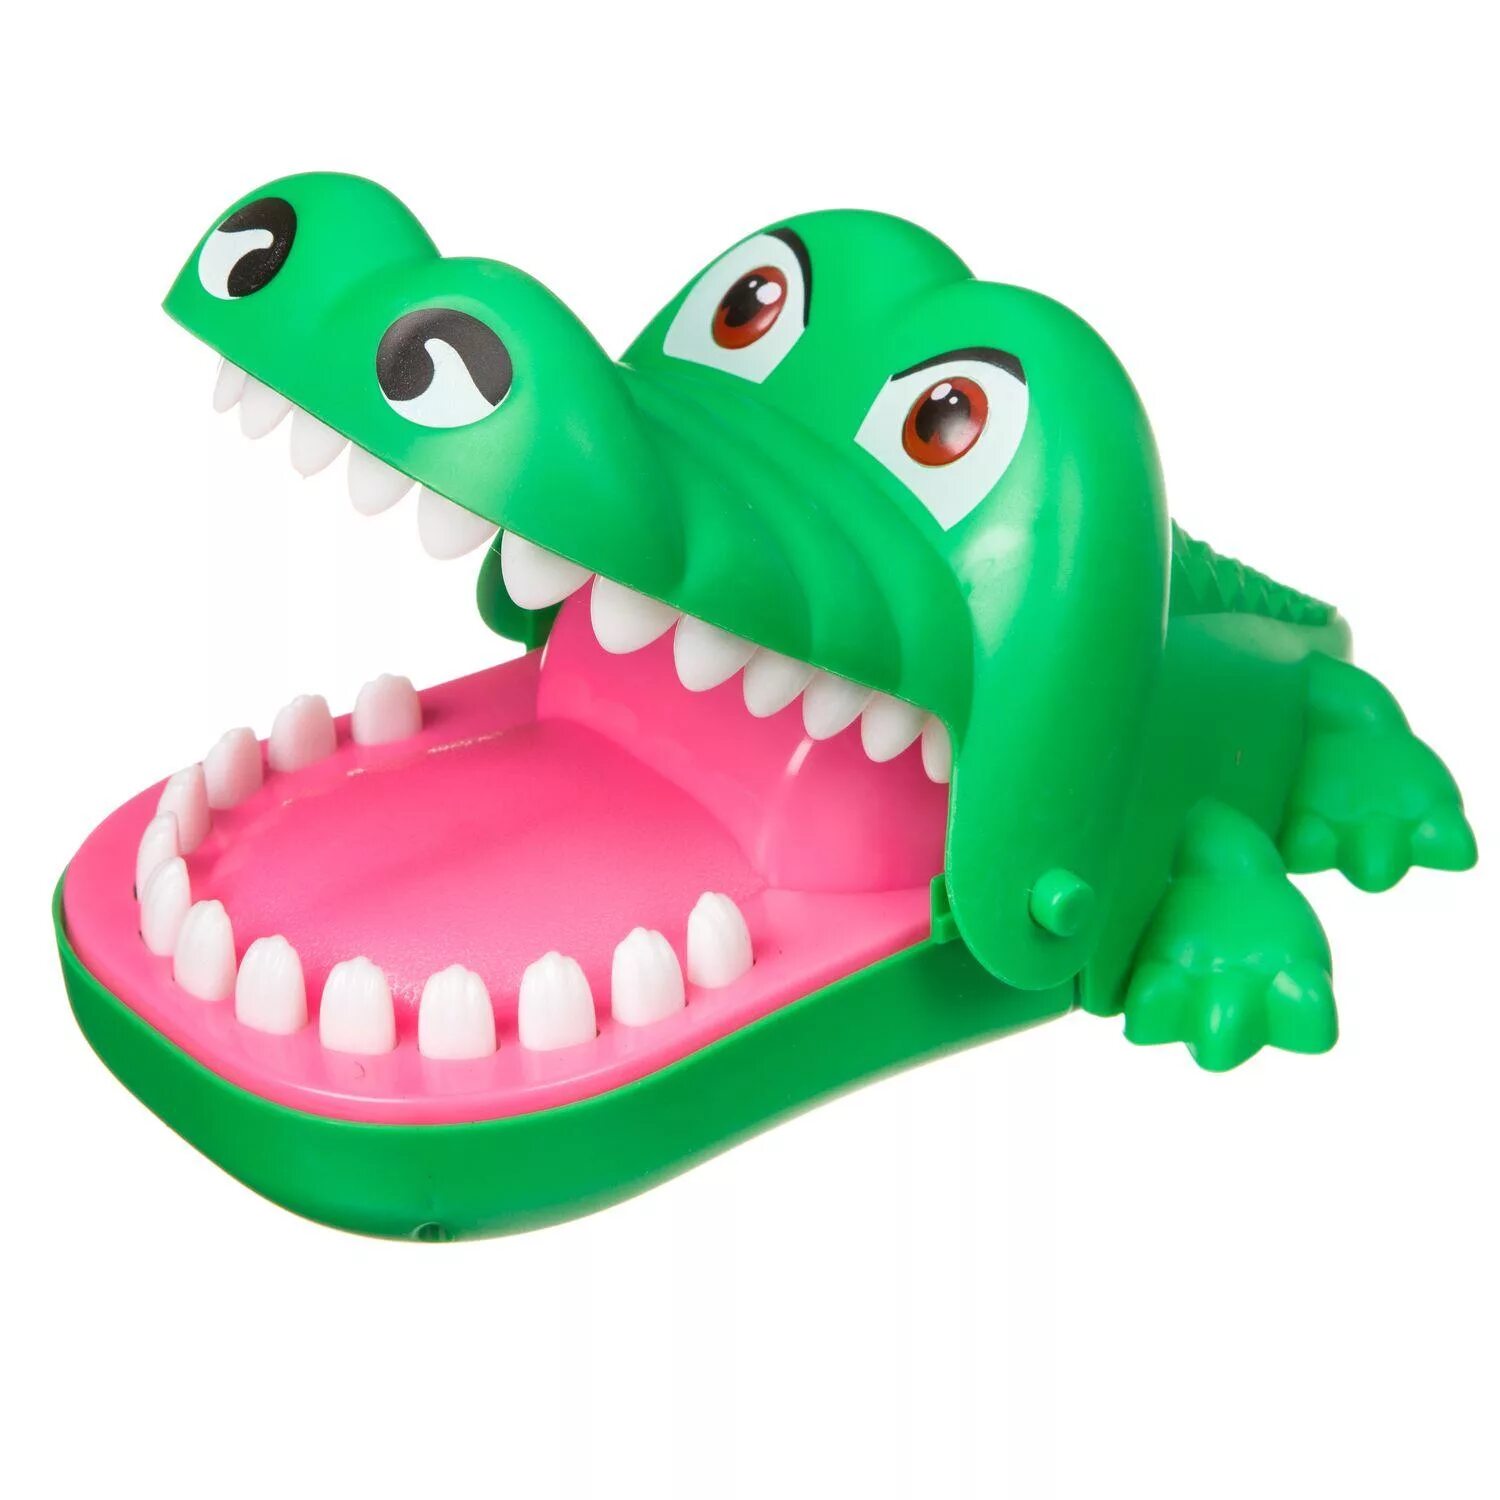 Крокодил нажимать на зубы. Крокодилы Бондибон. Настольная игра Bondibon зубастый крокодил вв2073. Настольная игра Bondibon зубастый крокодил вв3692. Настольная игра Bondibon зубастый динозавр вв3688.